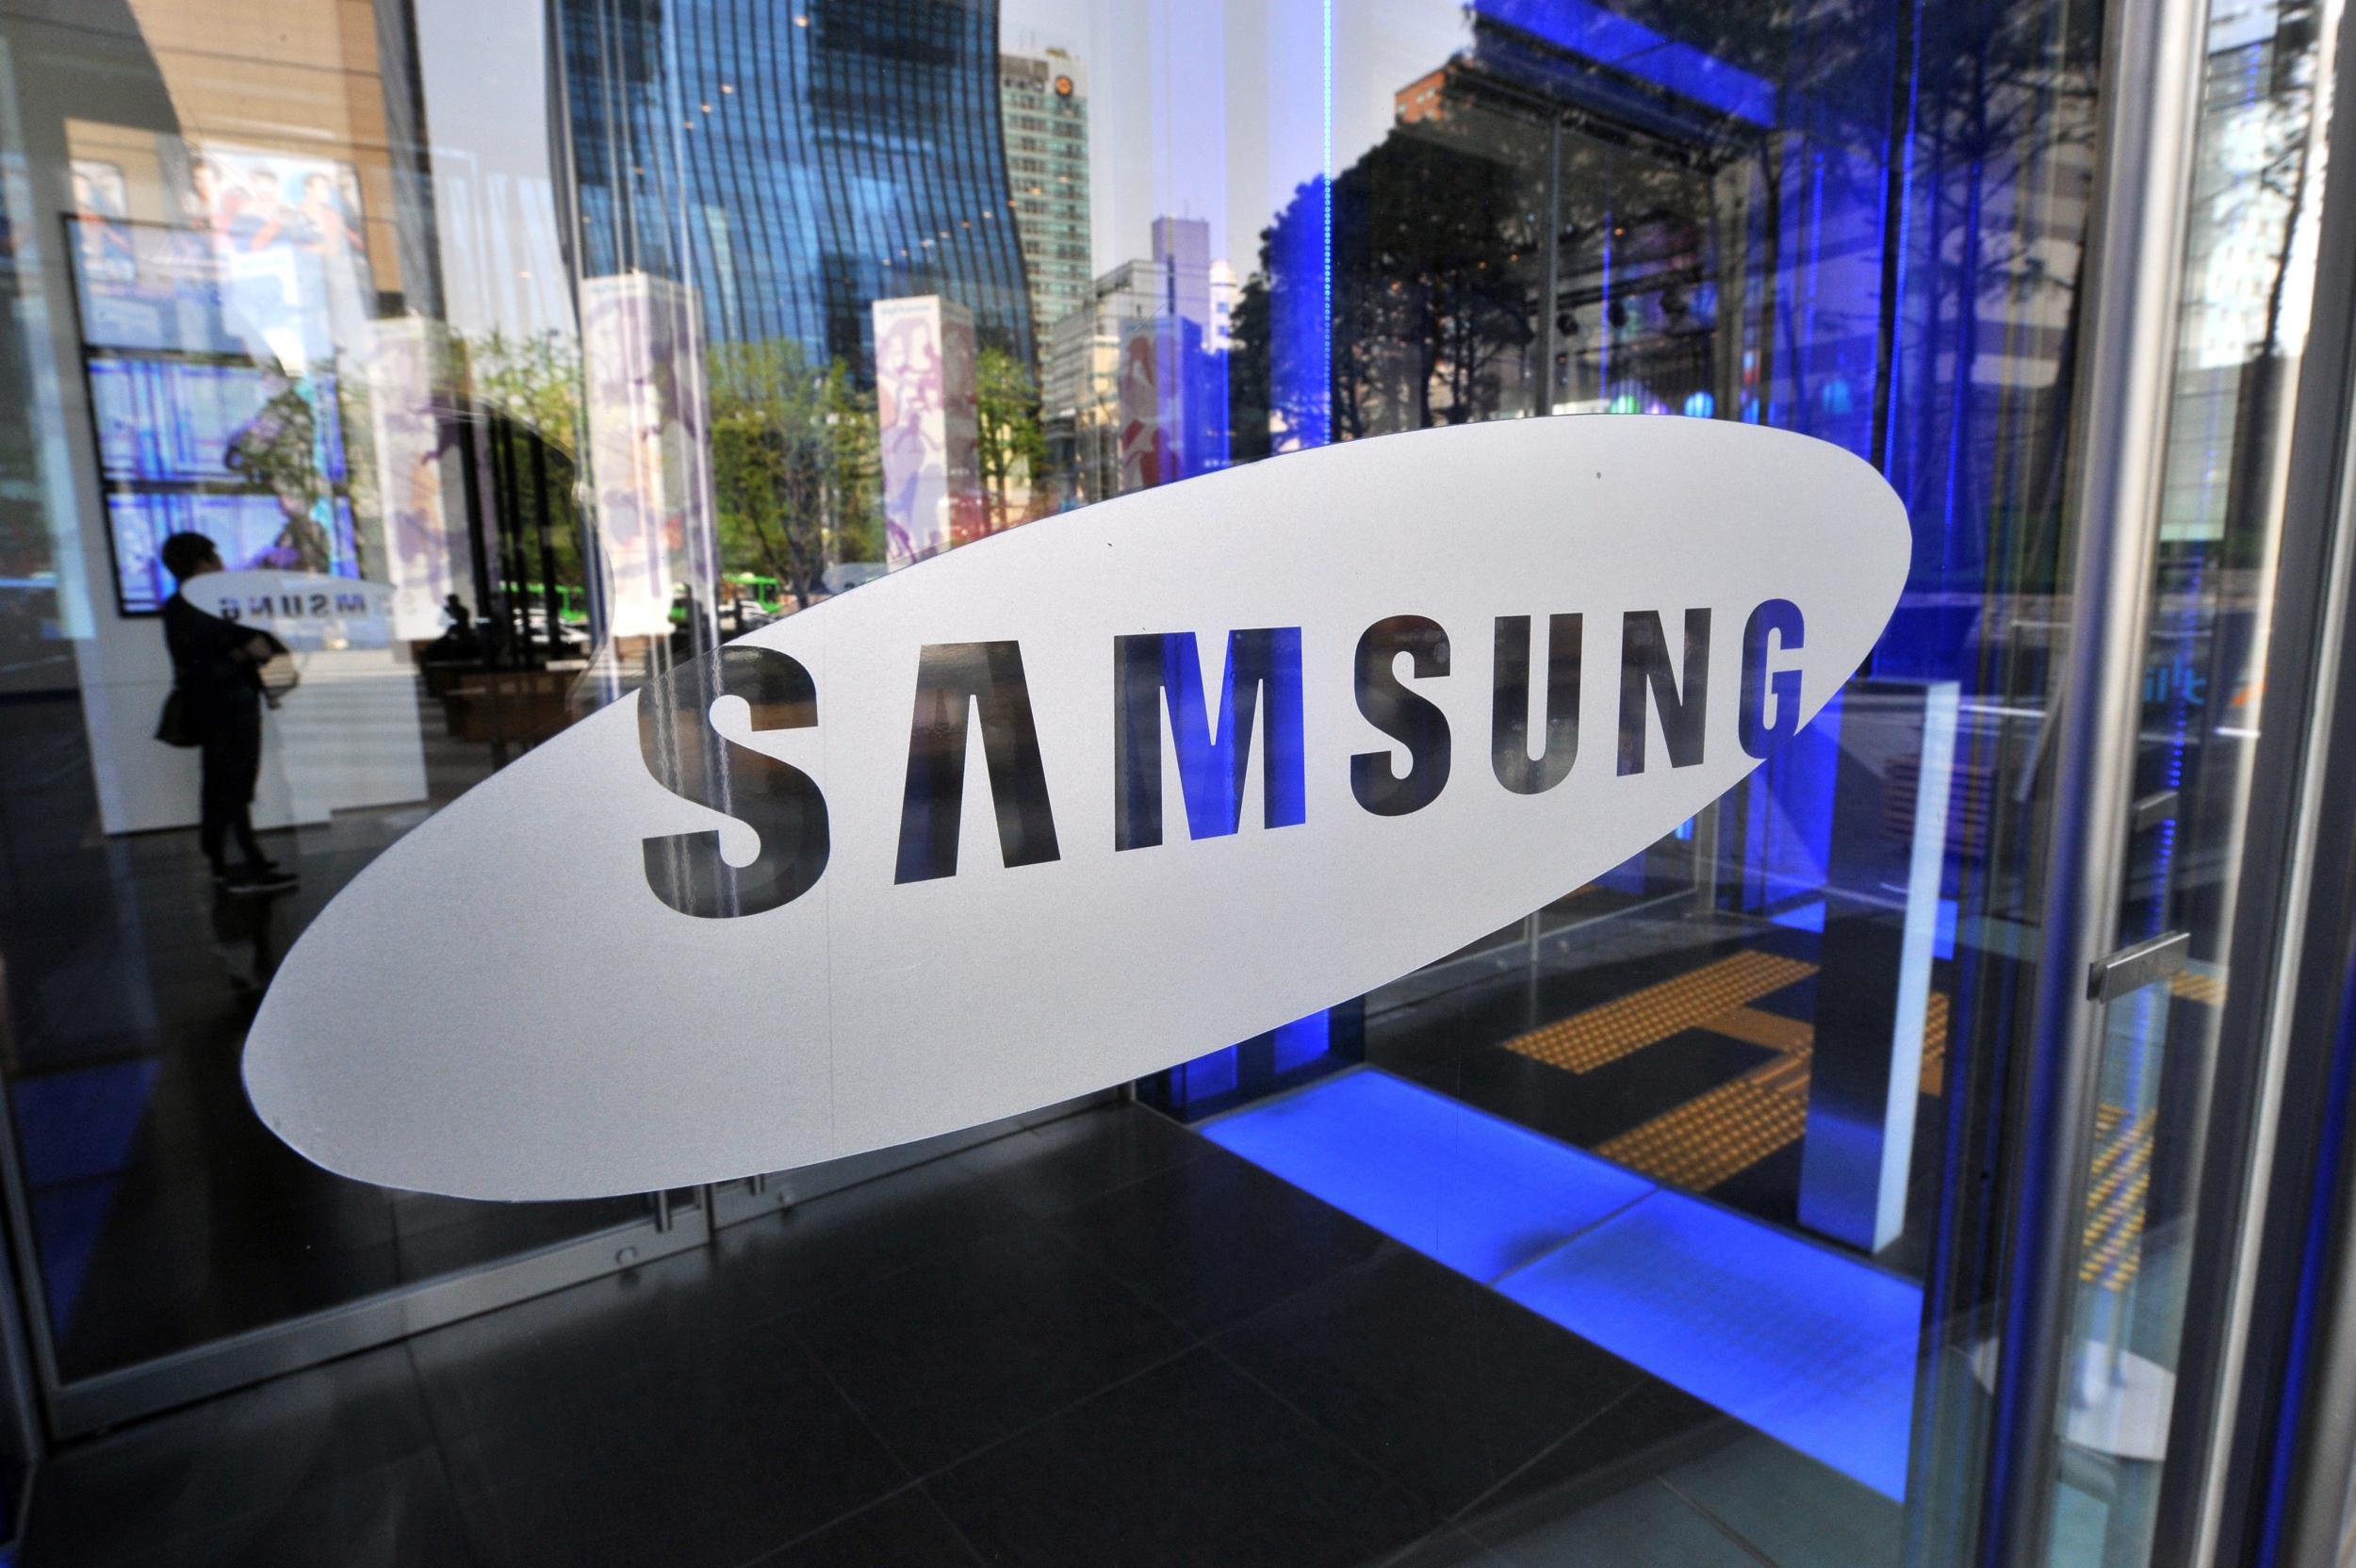 Samsung получила патент на новый смартфон с выдвижной камерой